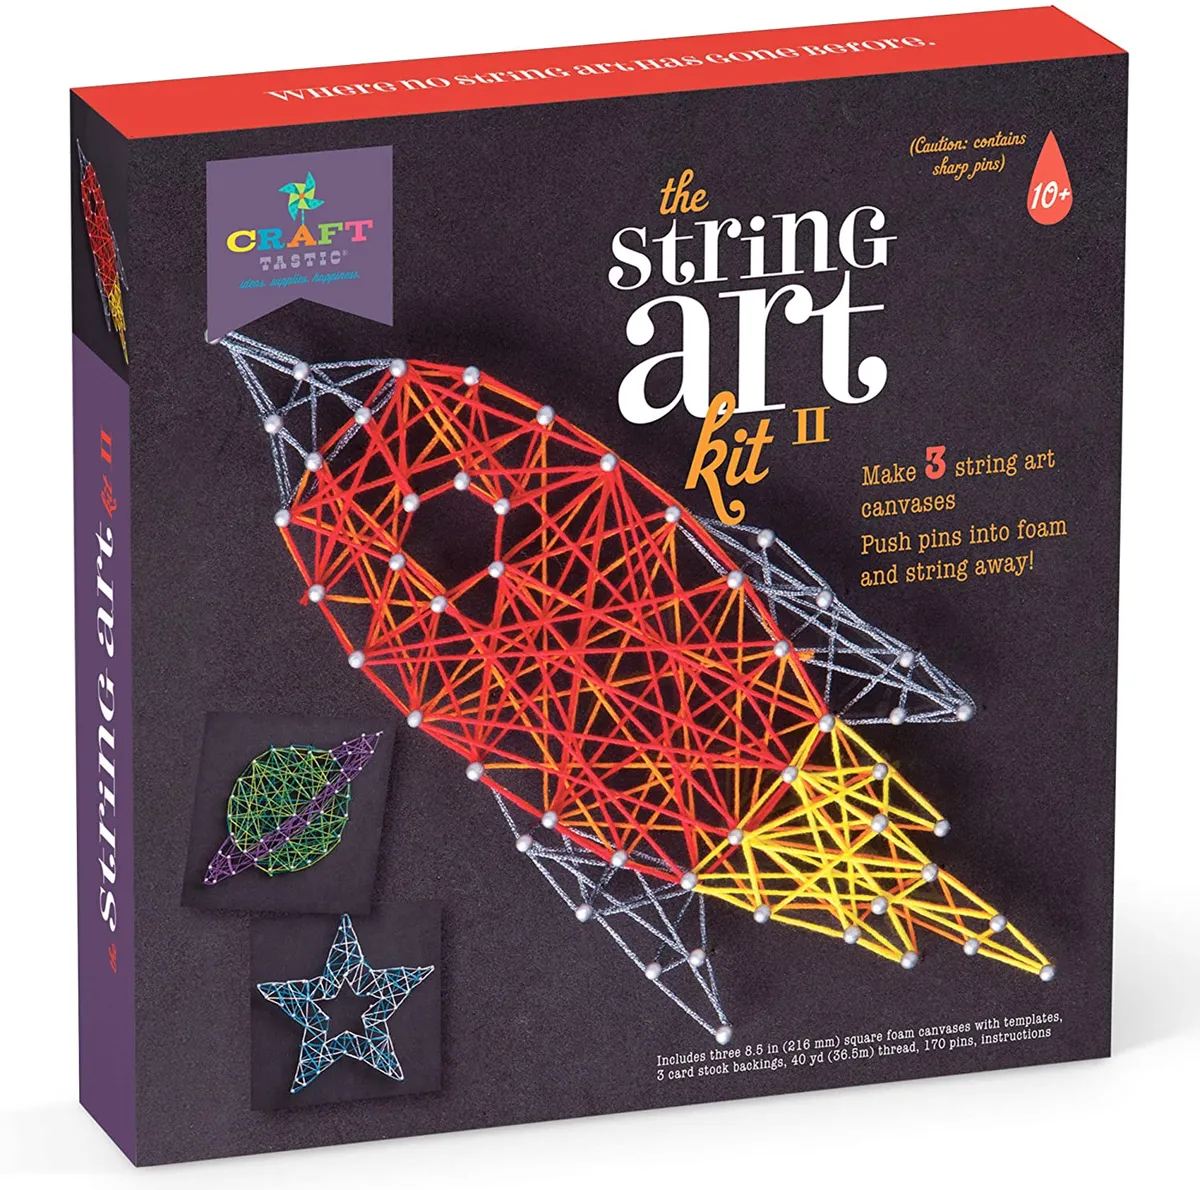 Rocket string art kit